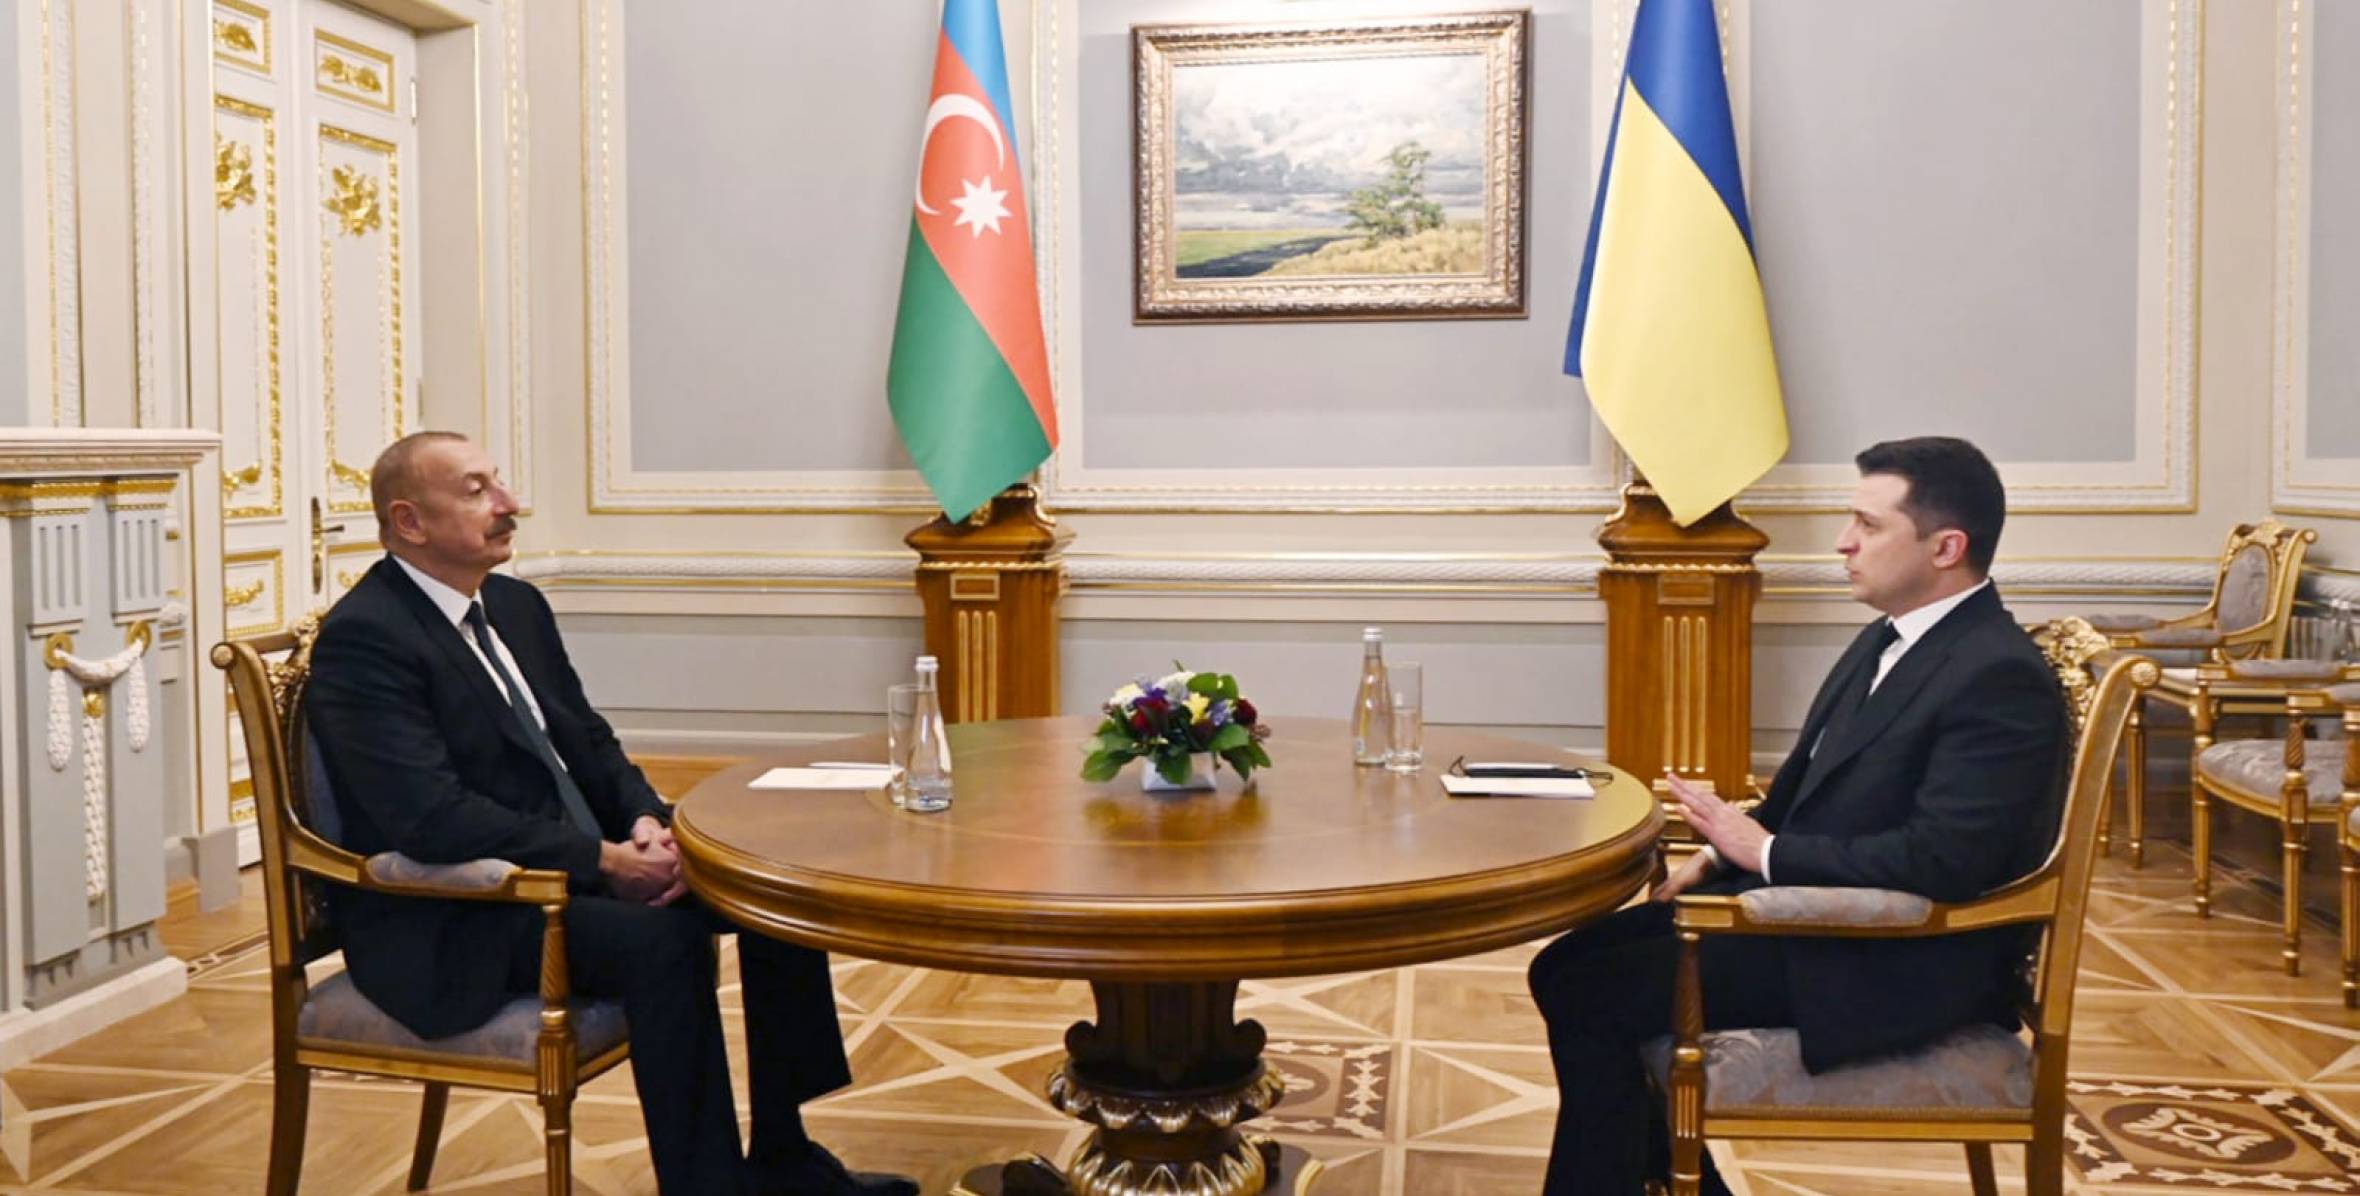 Ilham Aliyev, President of Ukraine Volodymyr Zelenskyy hold one-on-one meeting